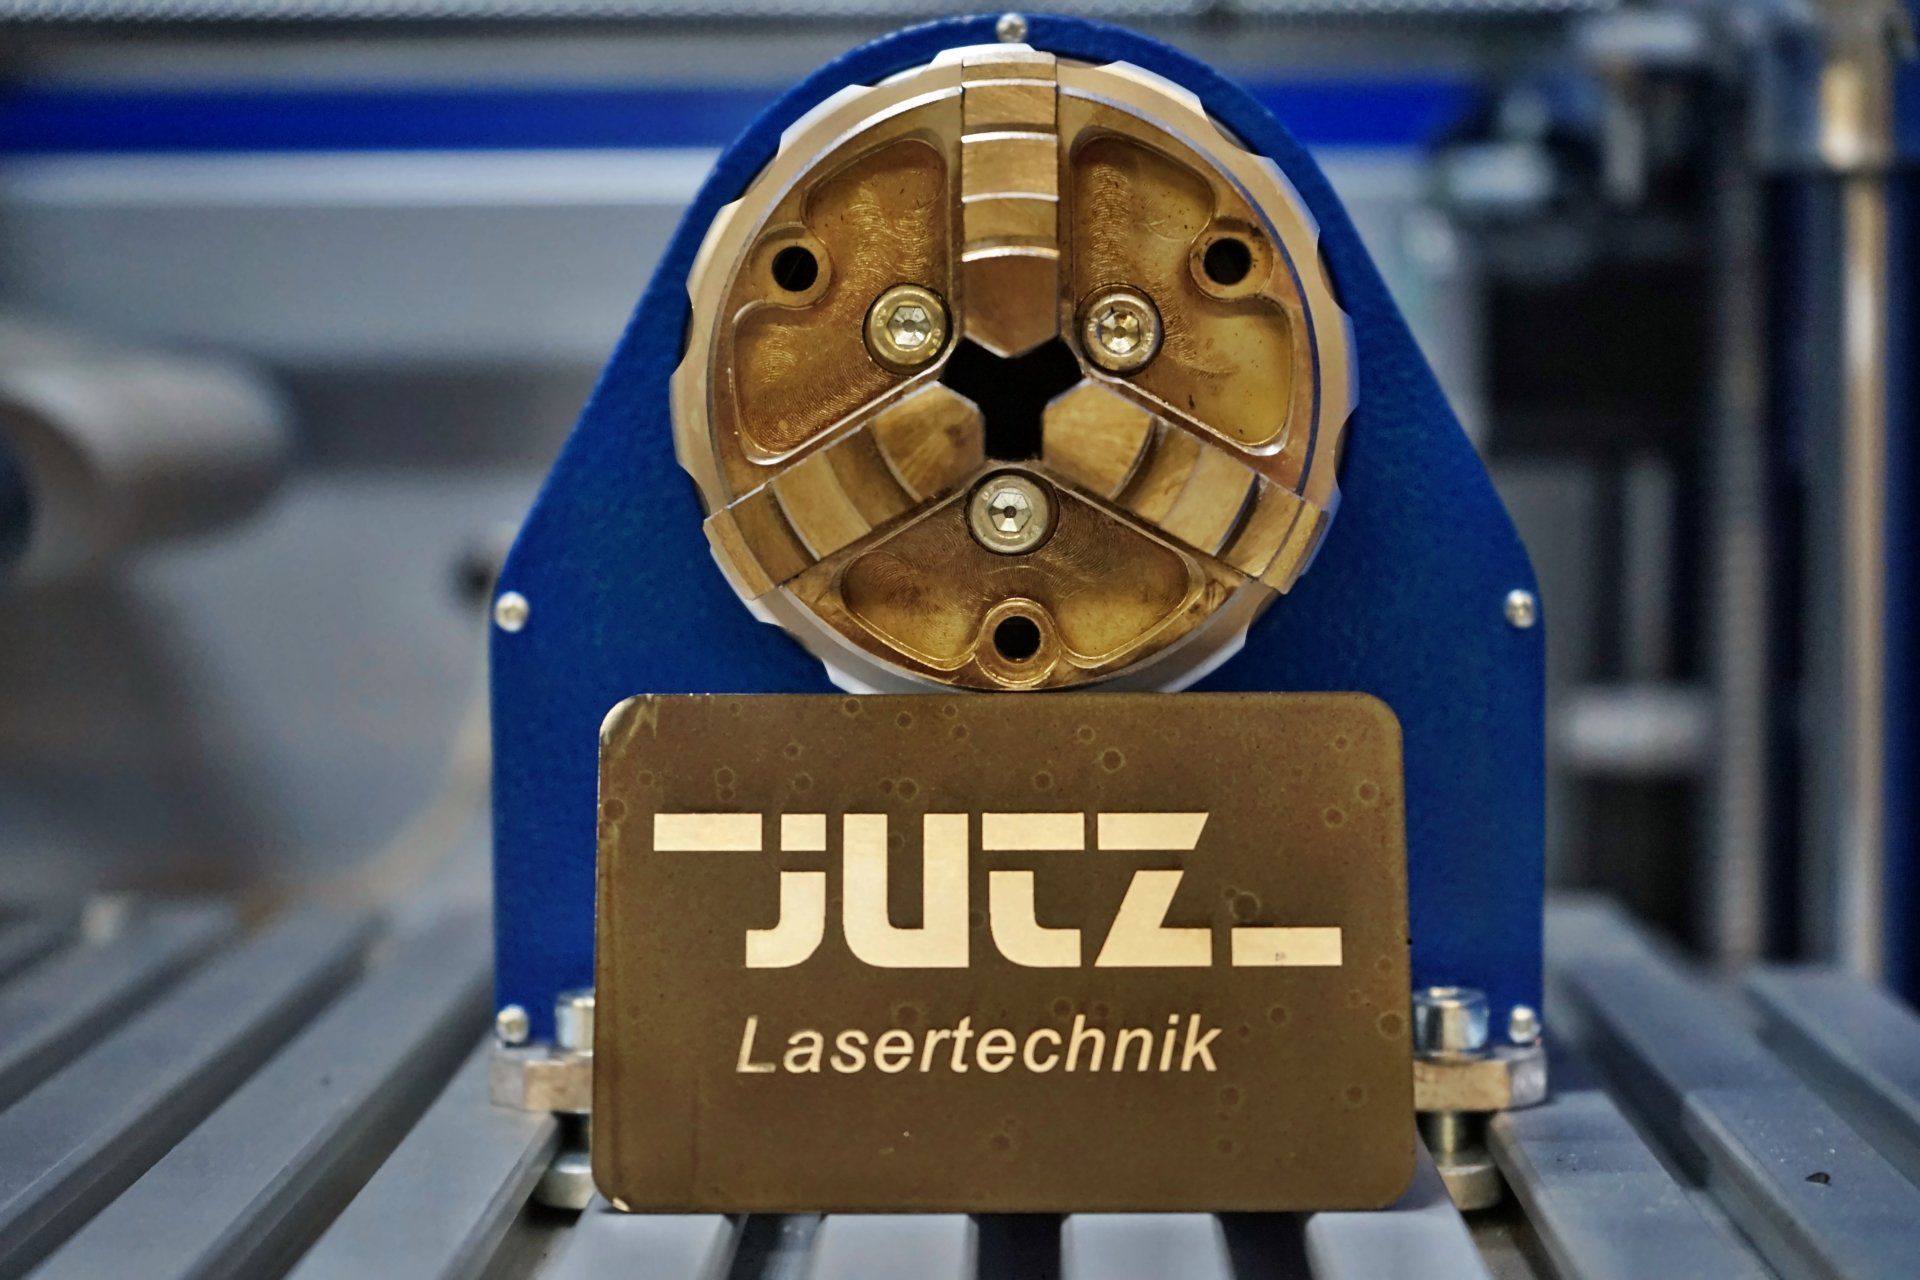 Jutz Lasertechnik, storitve, lasersko graviranje, lasersko označevanje